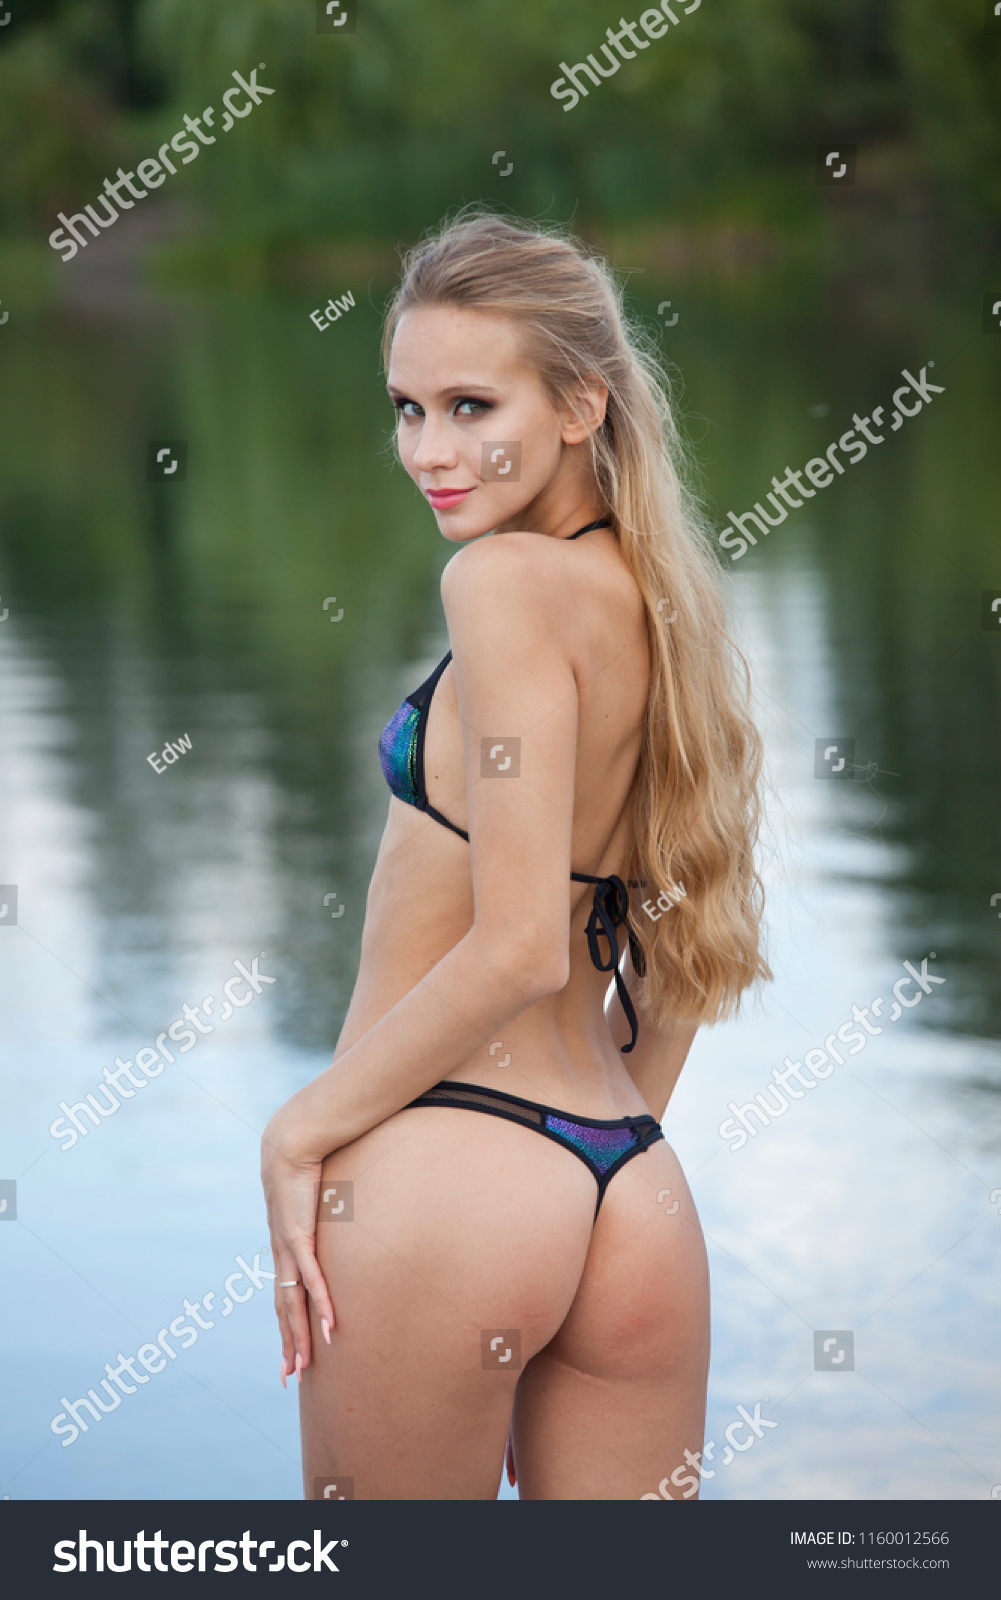 girl in skimpy bikini